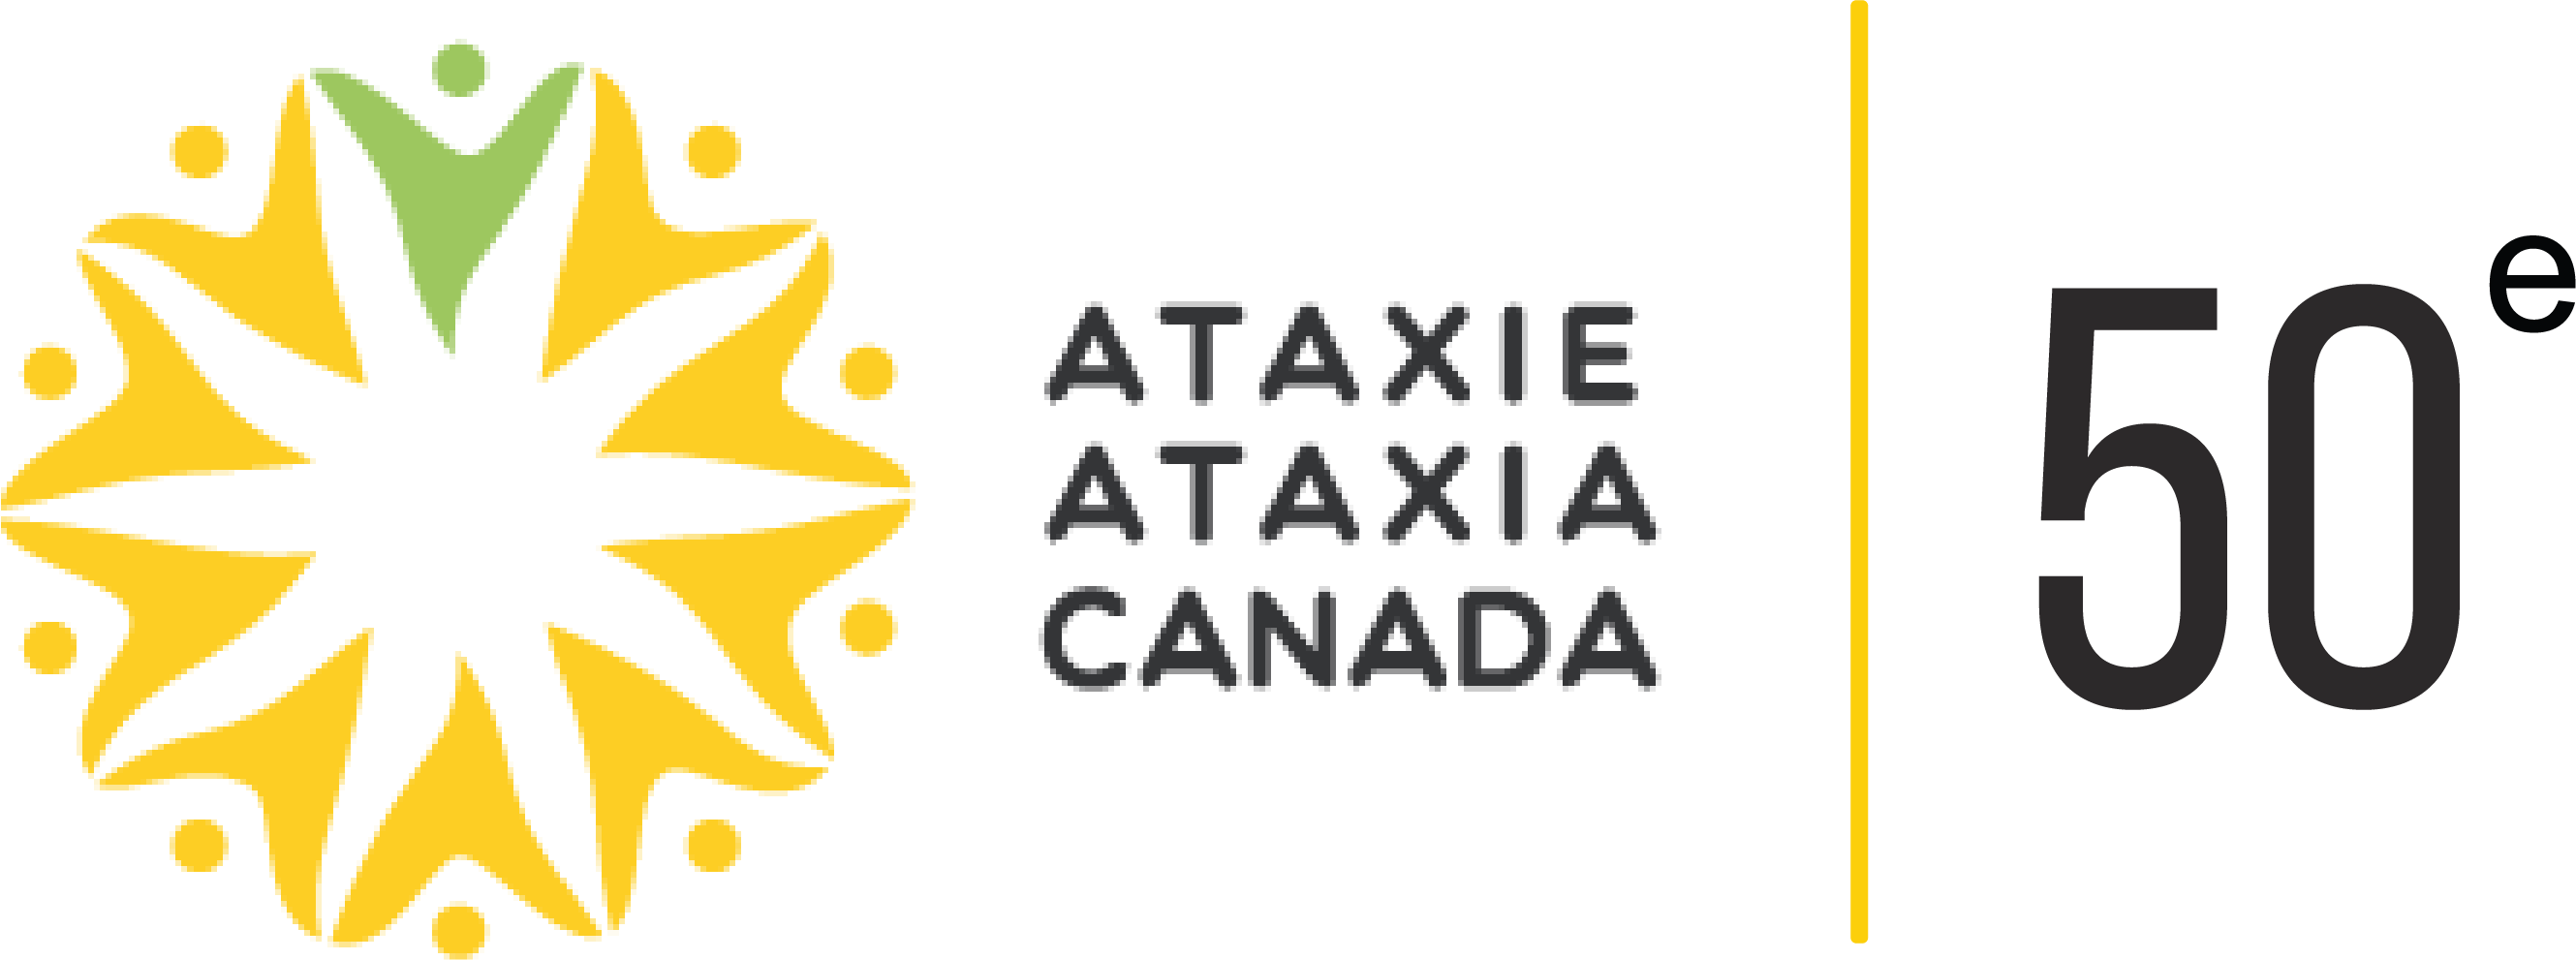 Ataxie Ataxia Canada